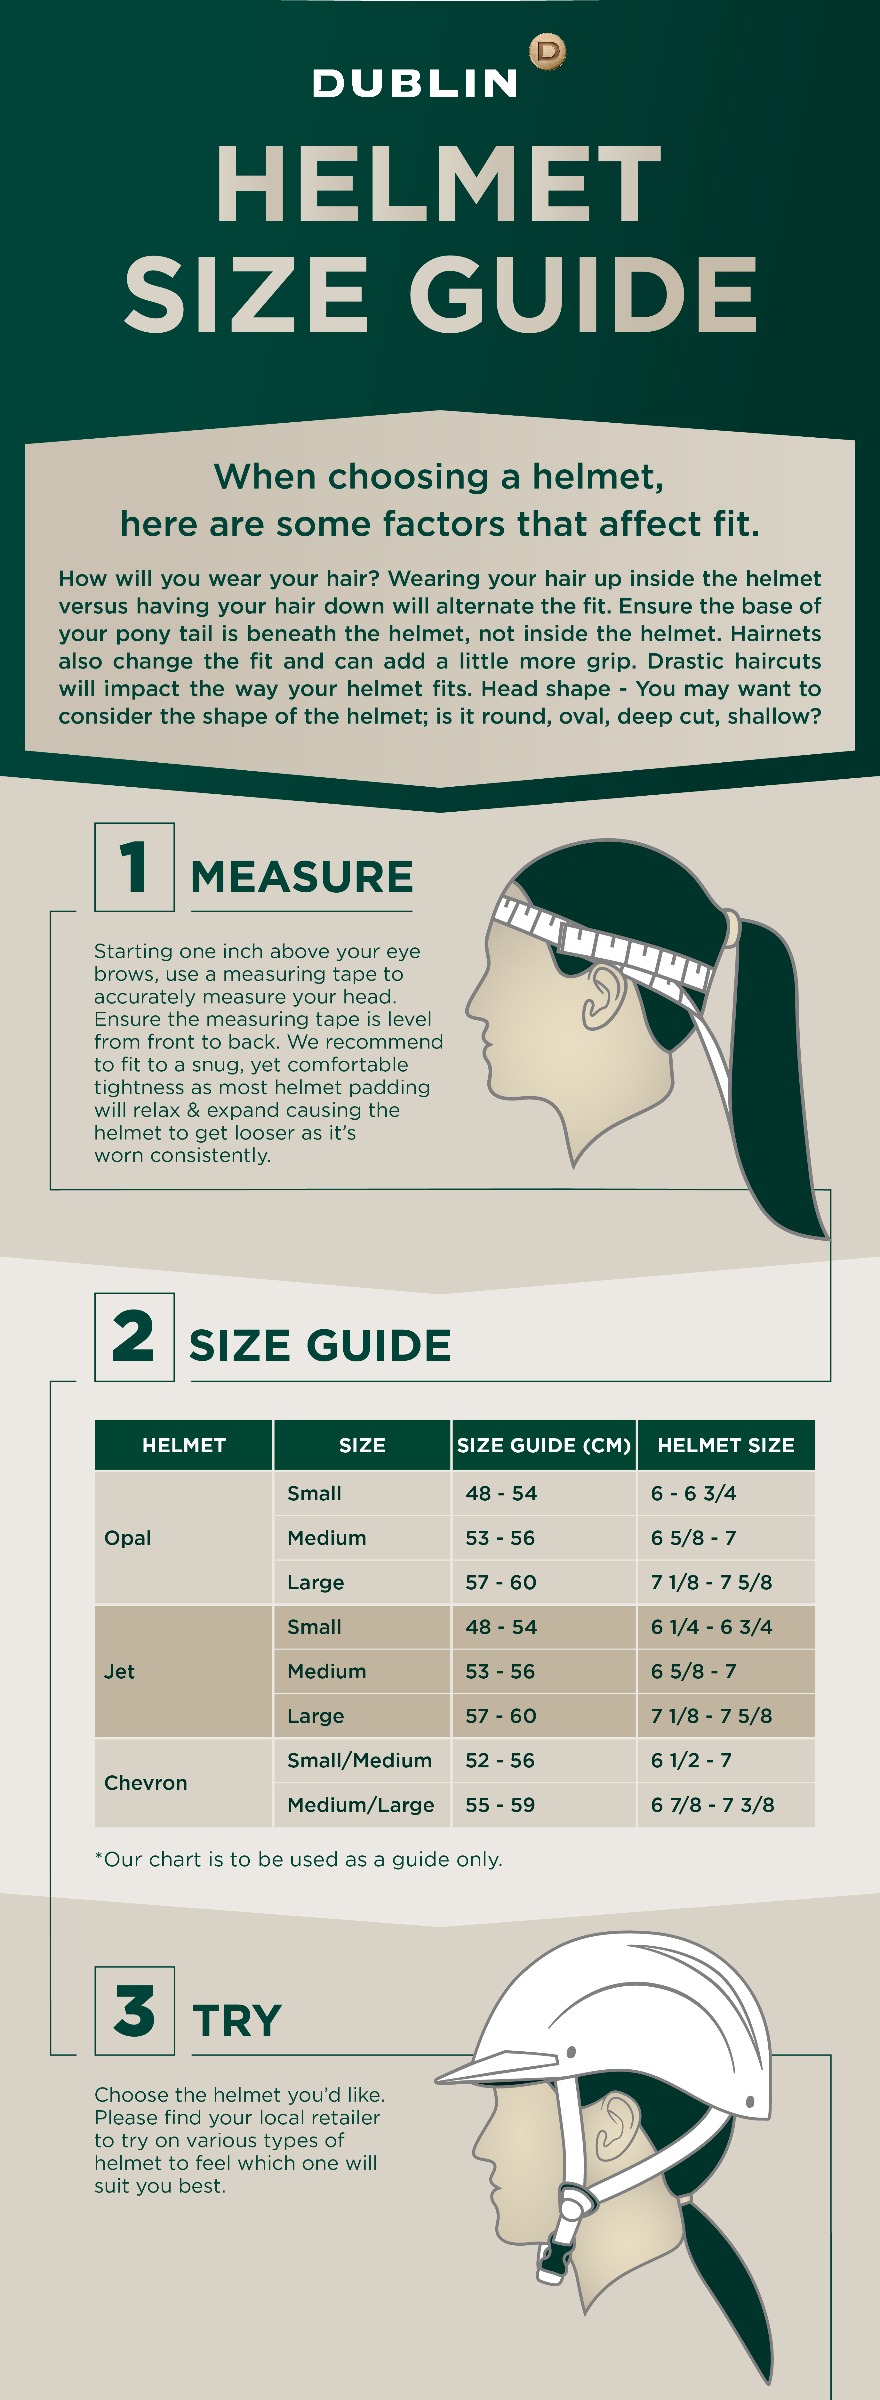 Helmet Size Guide by Dublin